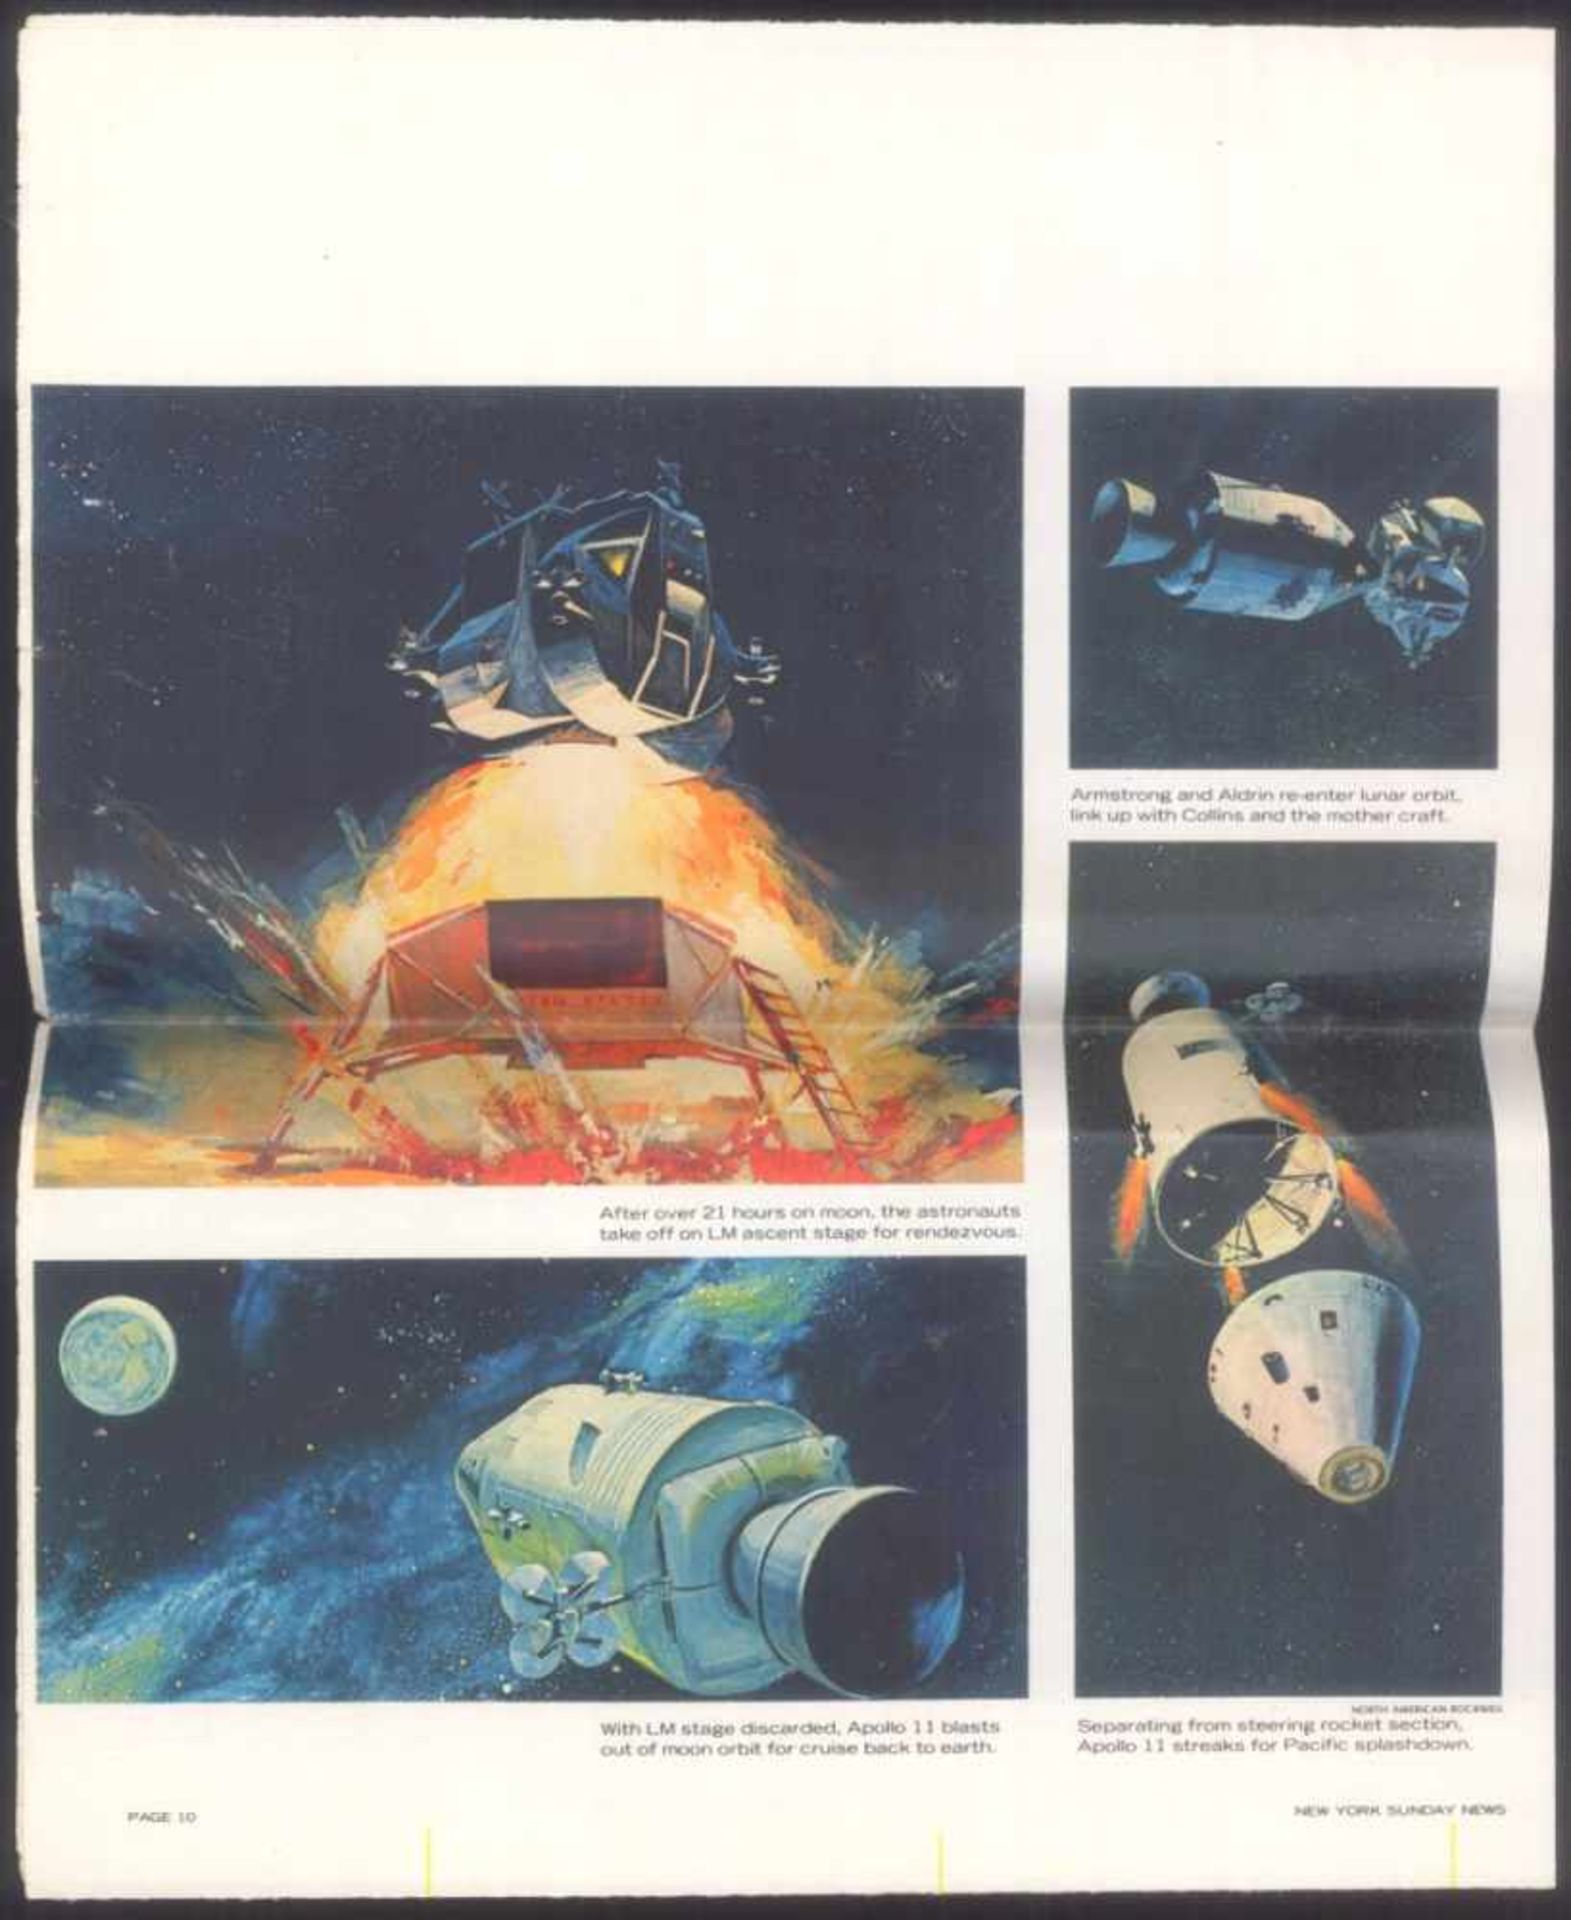 New York News, Special Issue, Apollo 11 MondlandungVom 25 May 1961, sehr guter Zustand, Knickfalte - Bild 2 aus 2